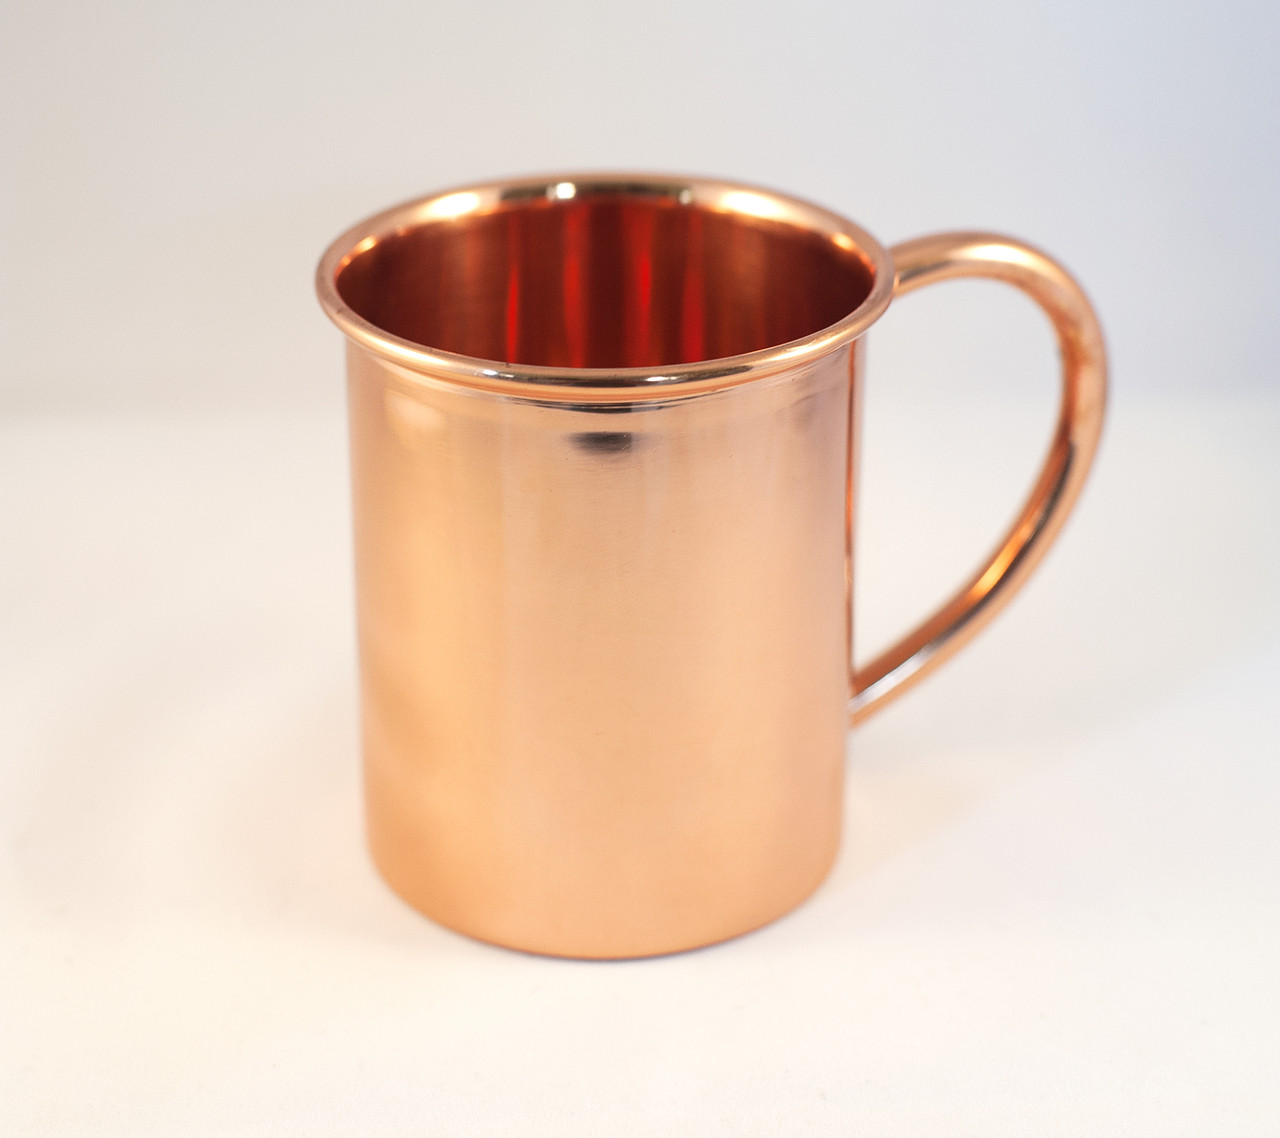 Moscow Mule Sertodo Copper Mug 12 oz. - Objects of Beauty